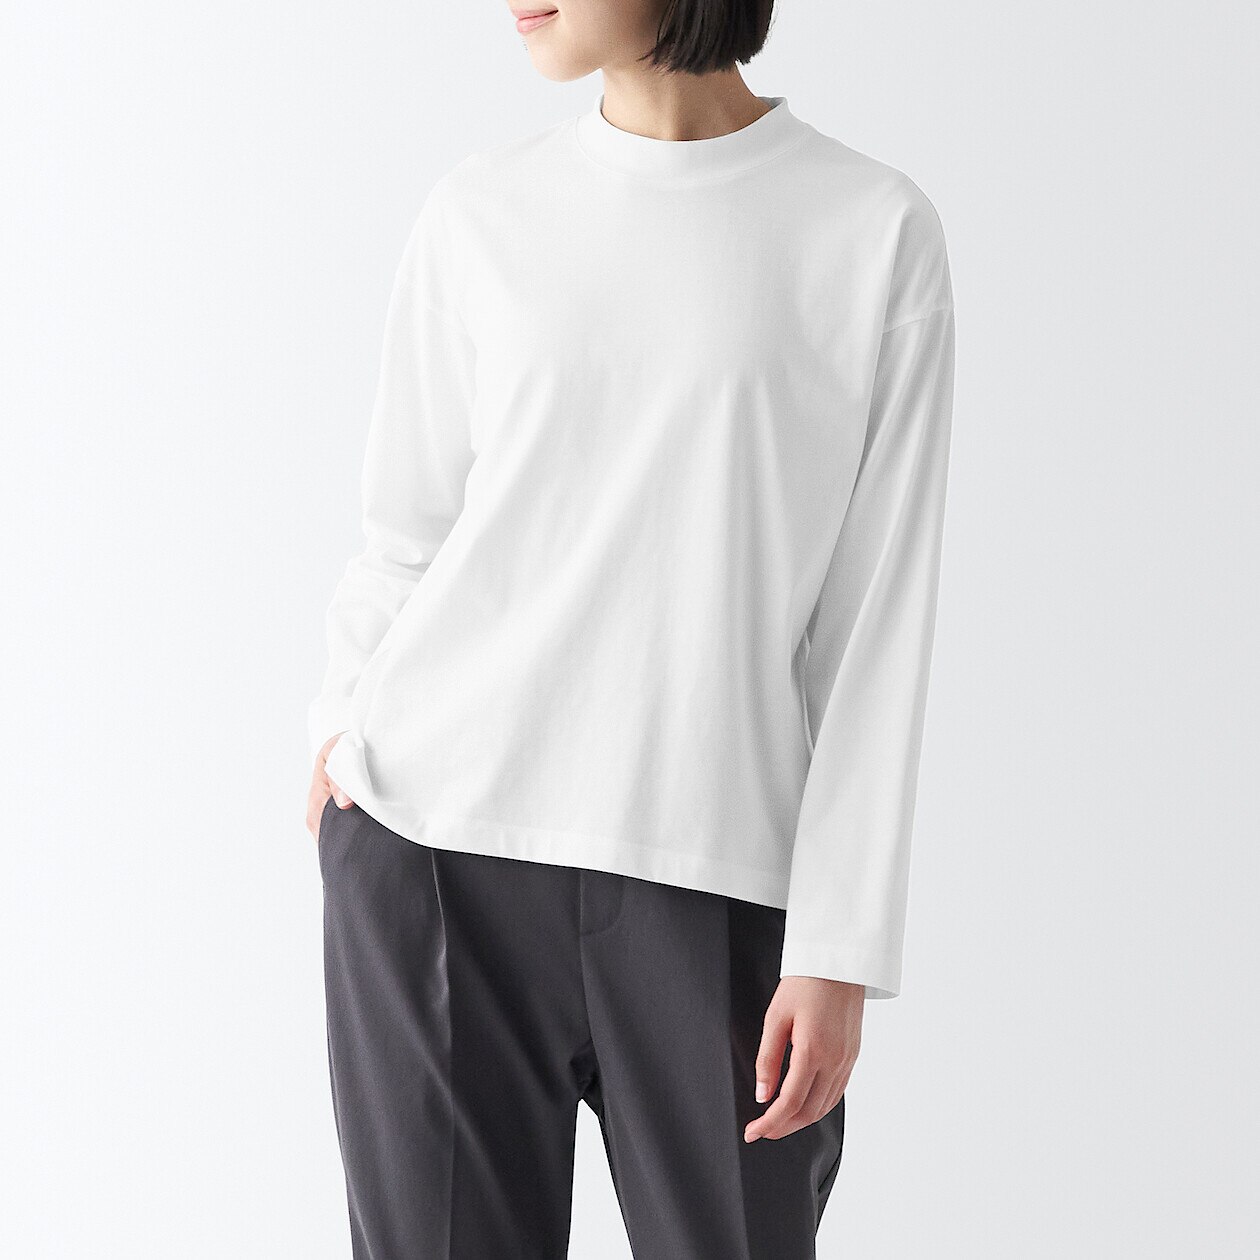 Women's Cotton Blend Long Sleeve T-shirt